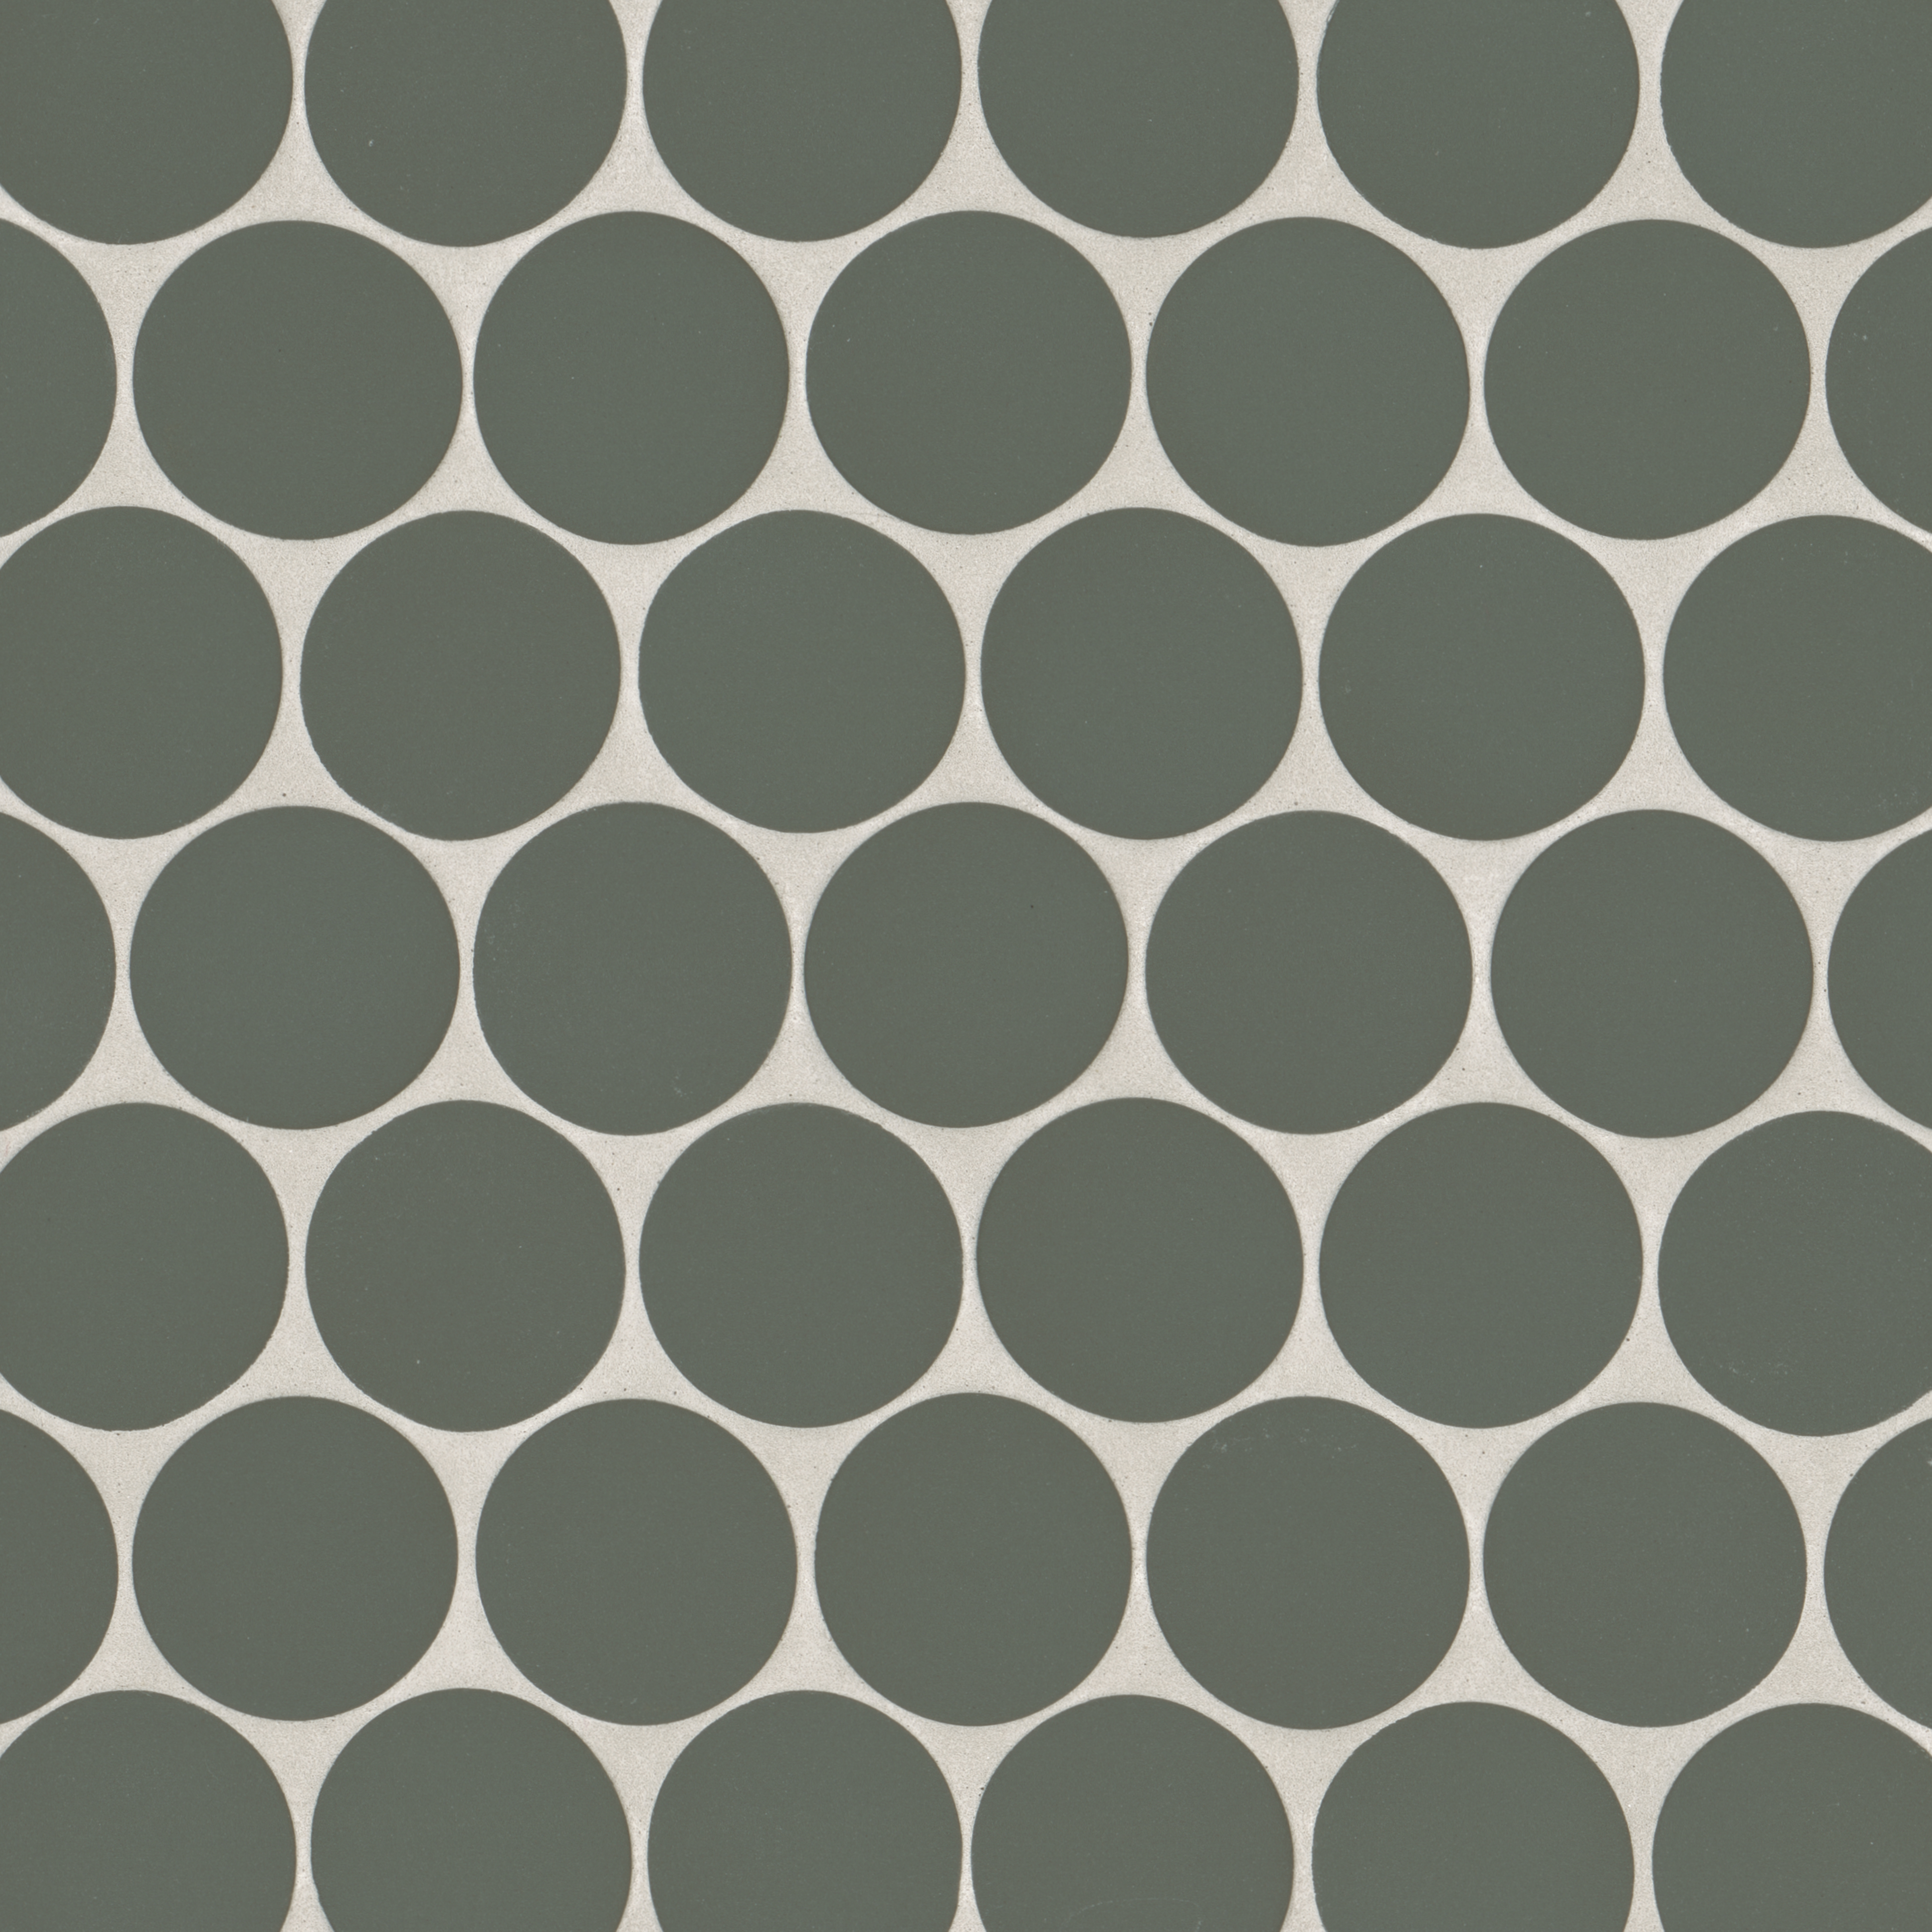 Gradient green mosaic tile mat